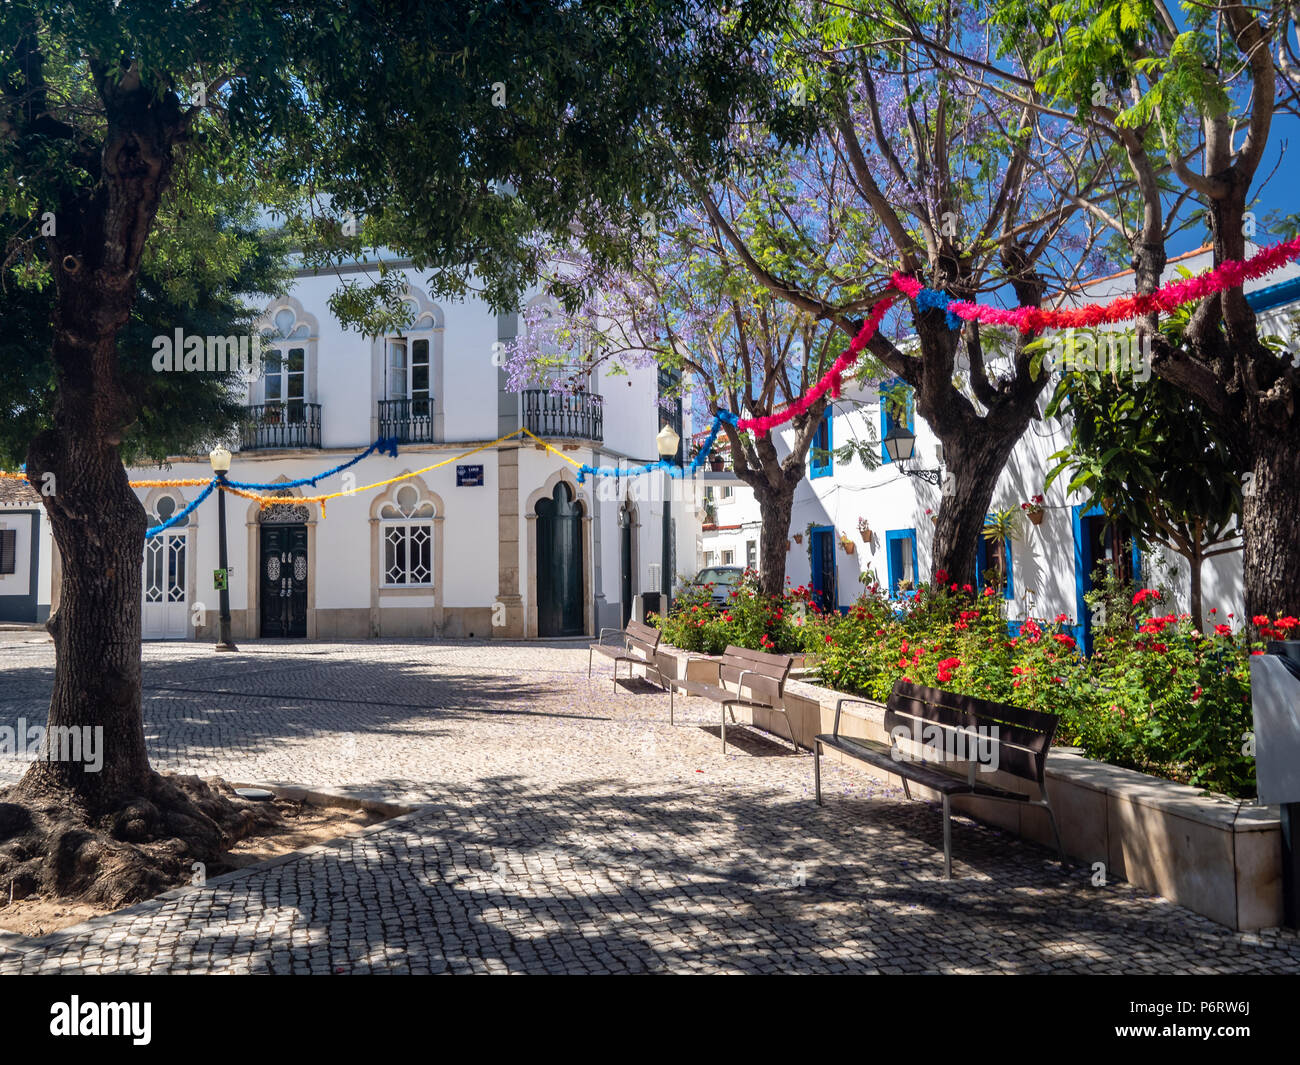 El estado de ánimo de verano del callejón en el antiguo pueblo de Estoi, Algarve, Portugal Foto de stock